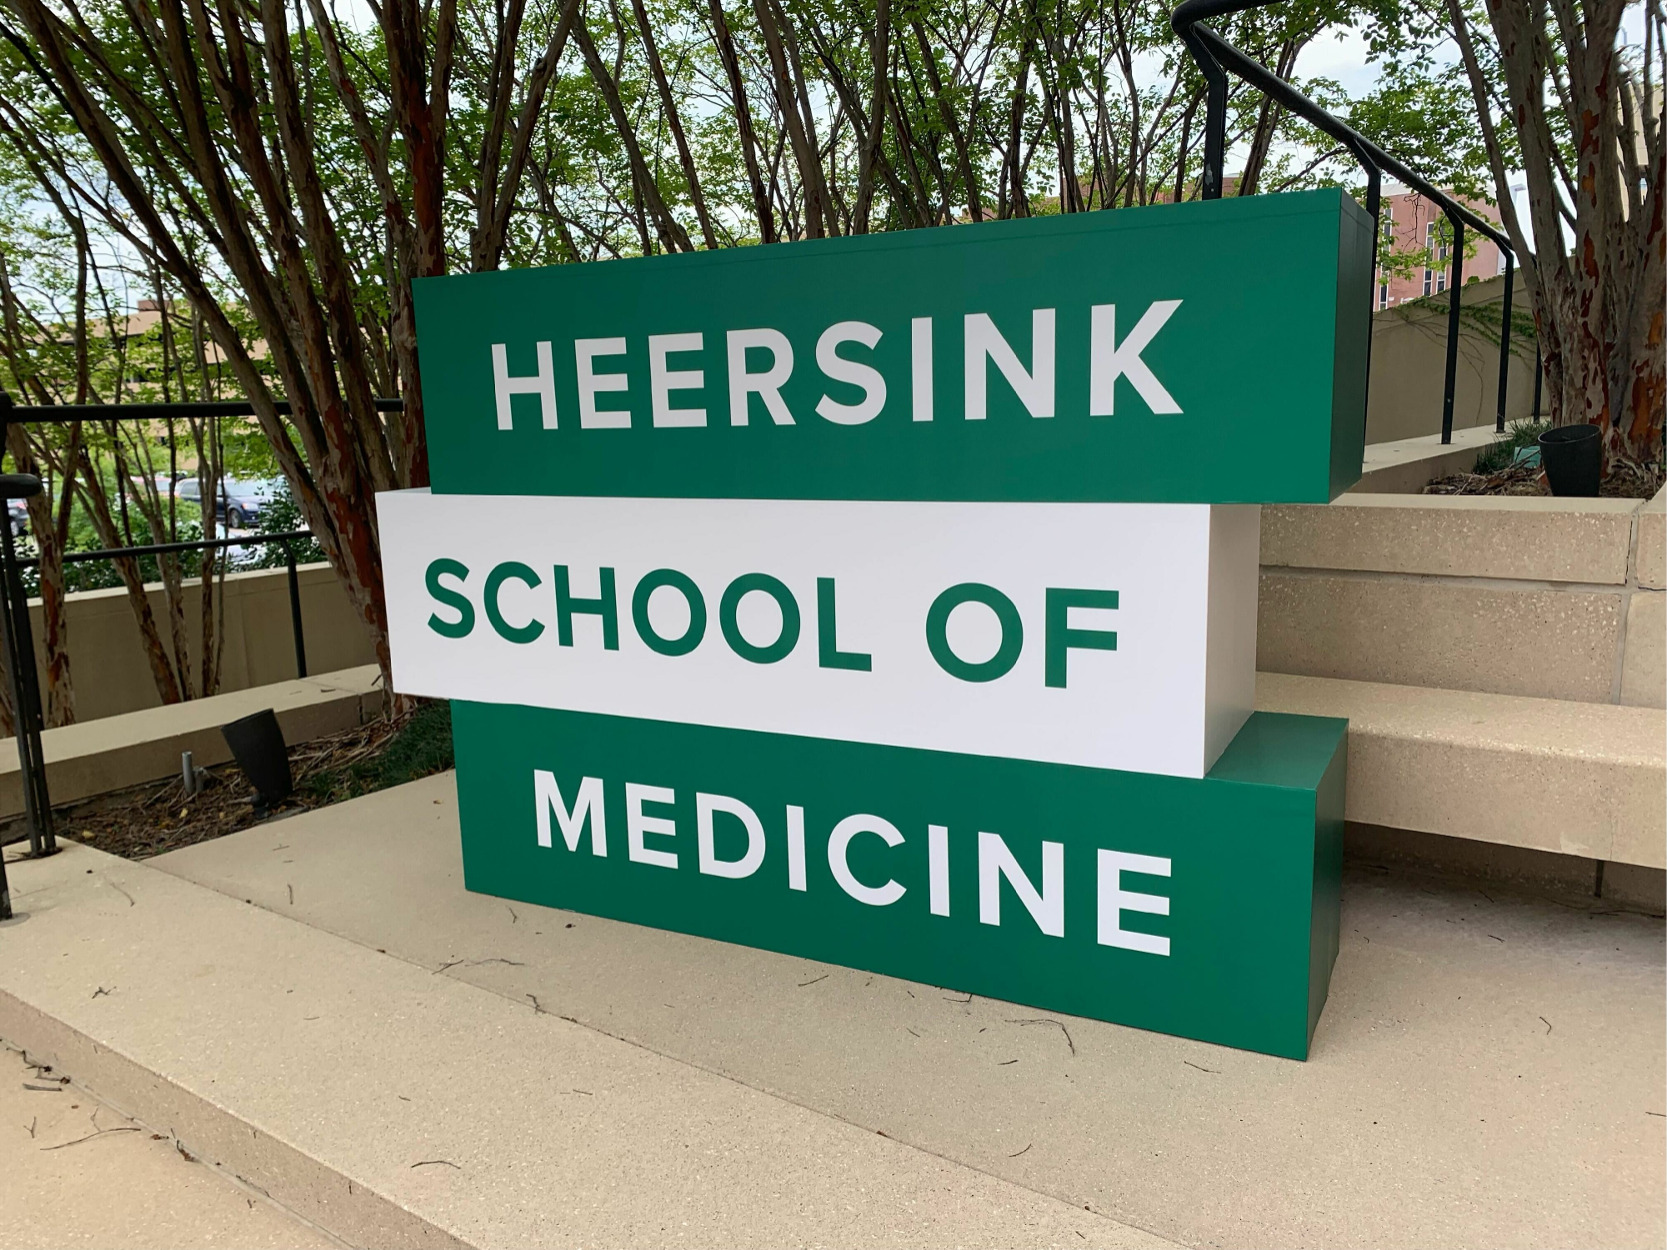 Heersink School of Medicine